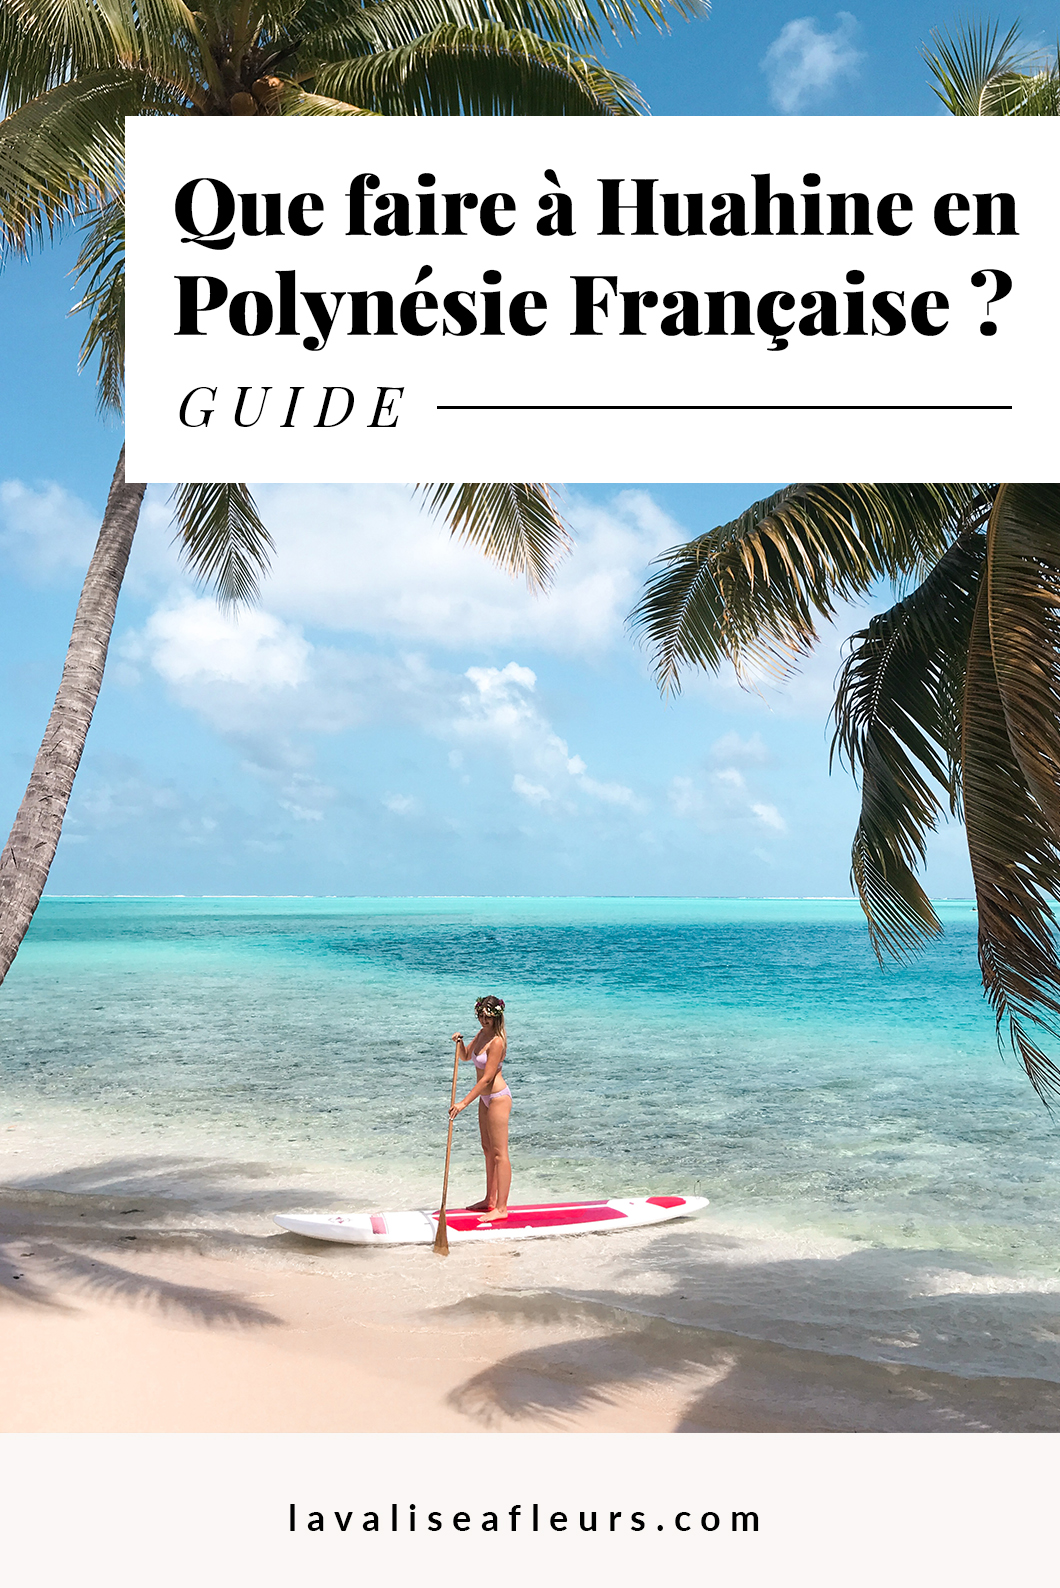 Que faire à Huahine en Polynésie Française ?